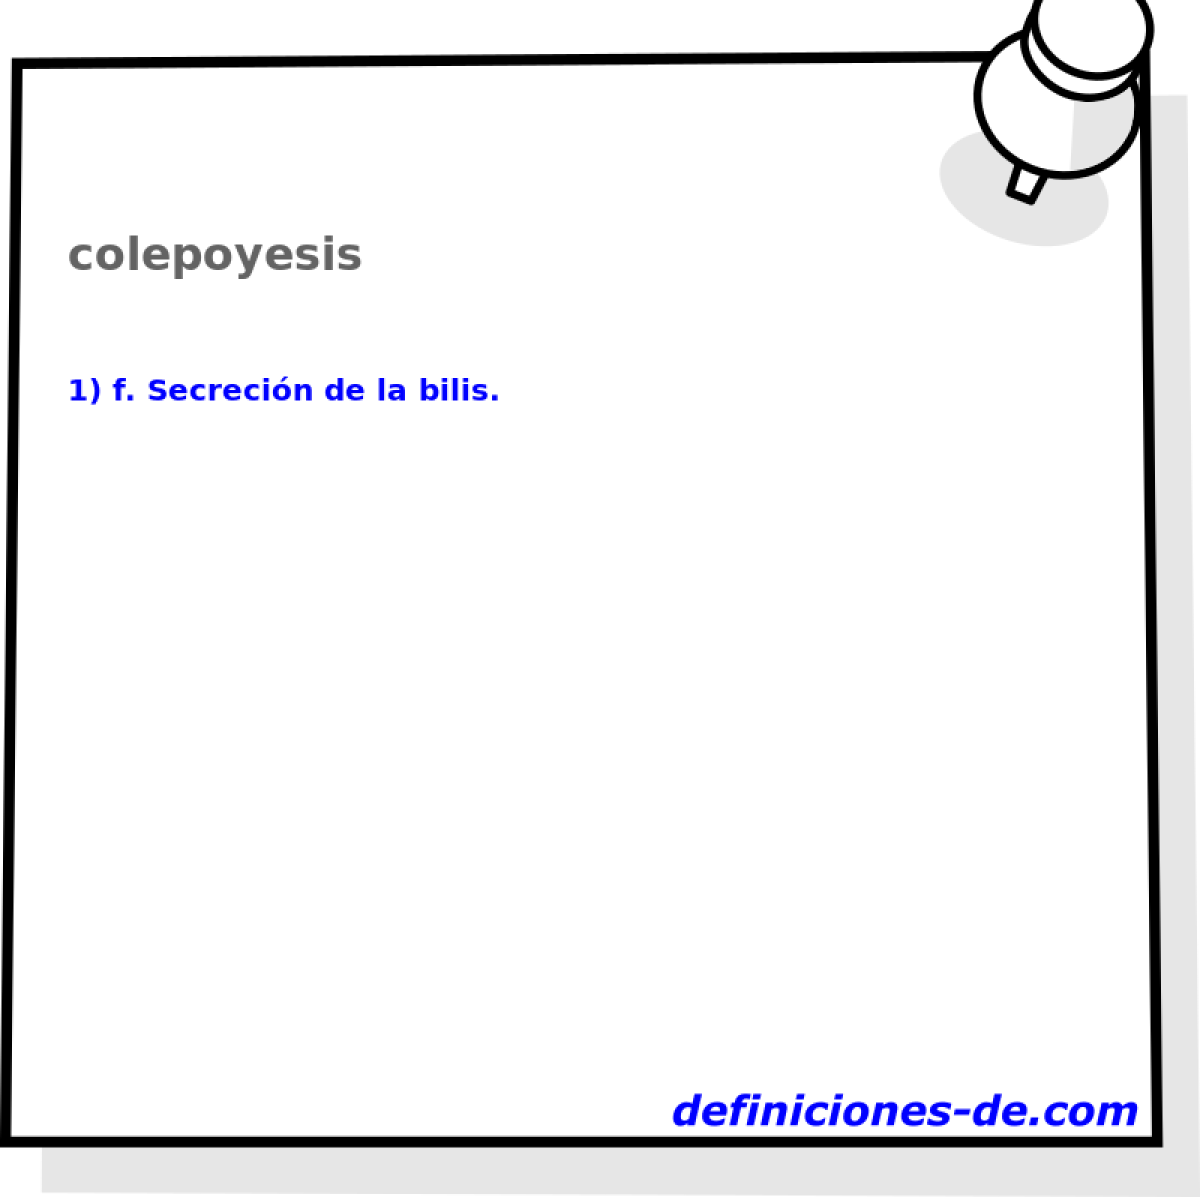 colepoyesis 